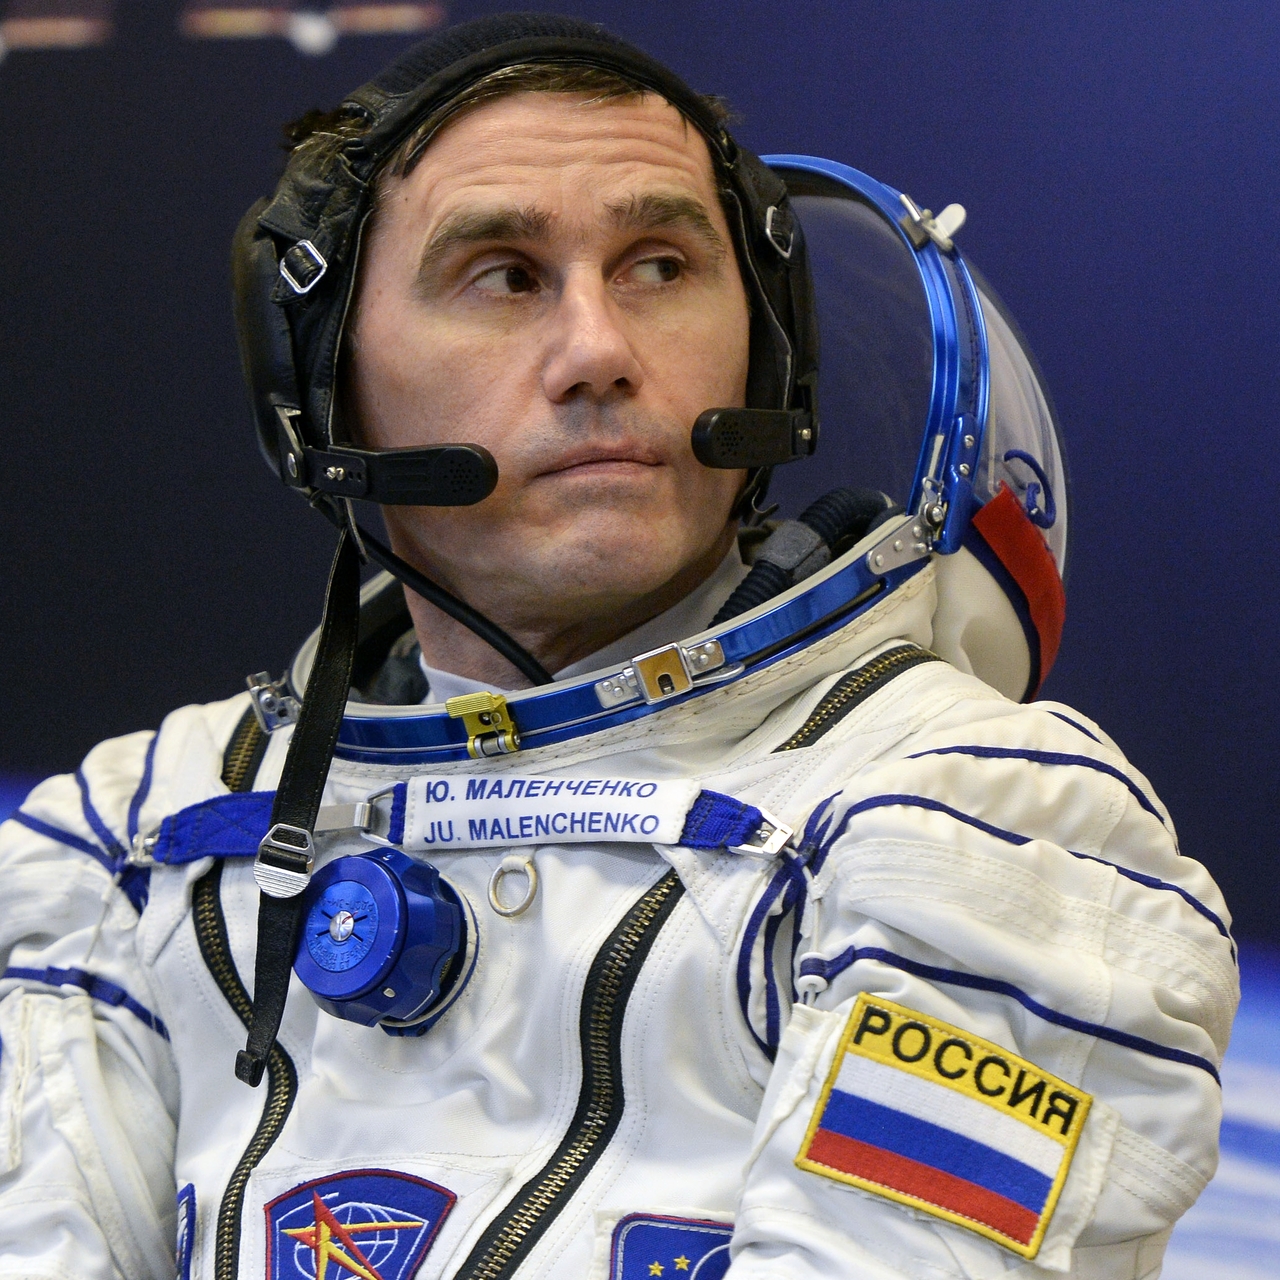 Российские космонавты россии